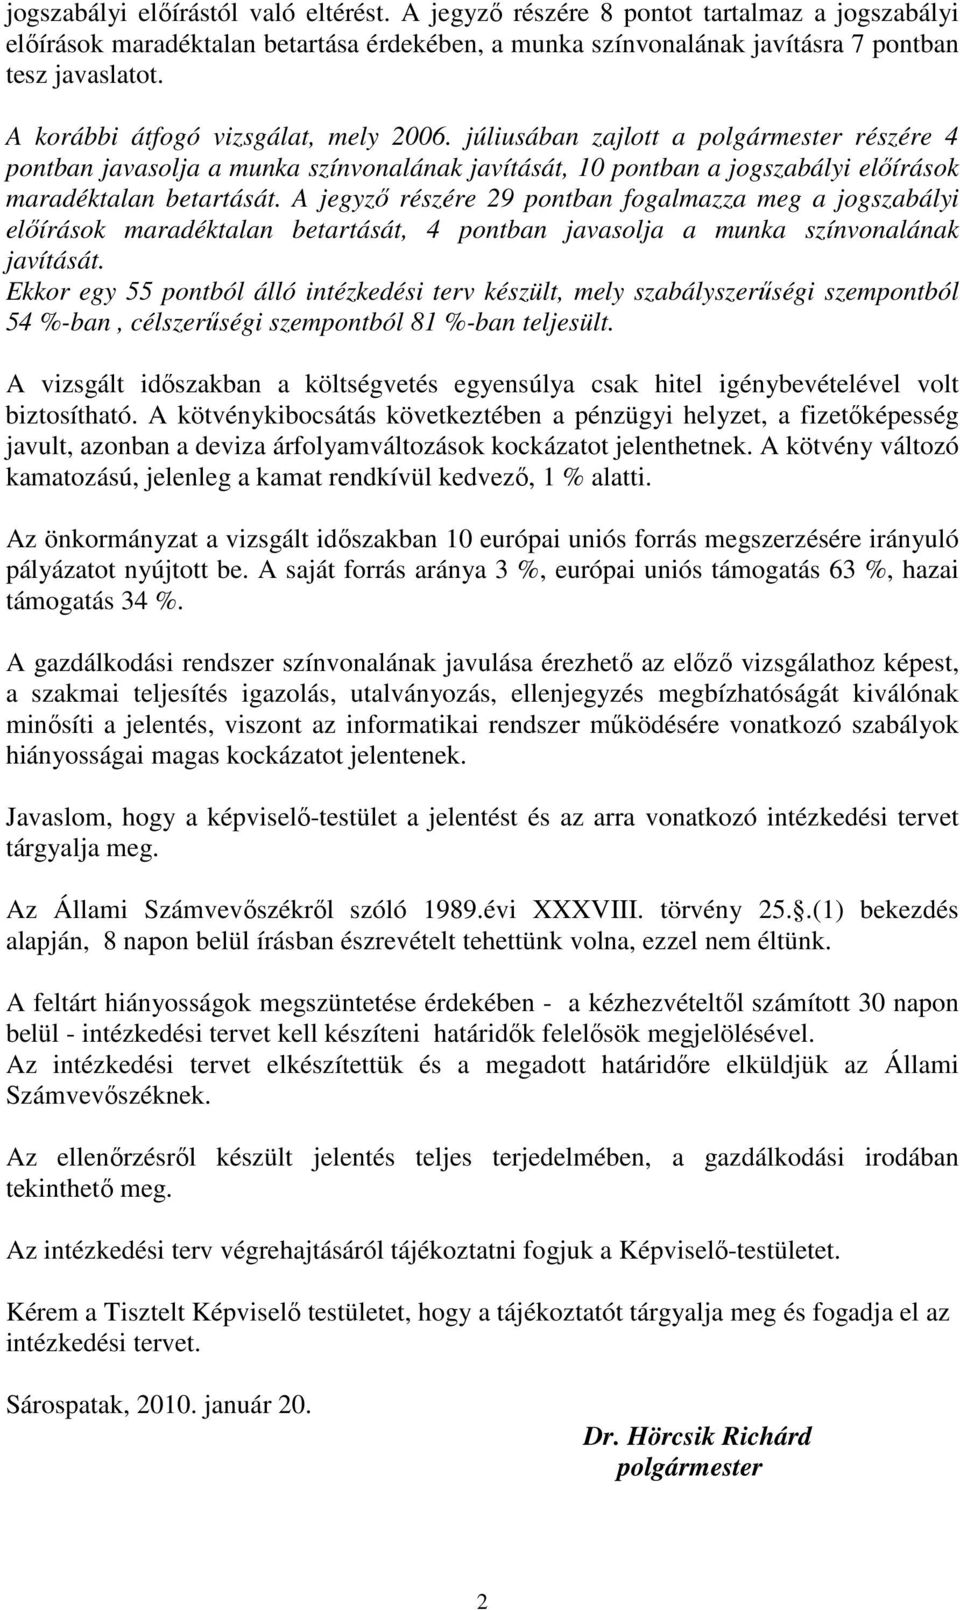 A jegyzı részére 29 pontban fogalmazza meg a jogszabályi elıírások maradéktalan betartását, 4 pontban javasolja a munka színvonalának javítását.